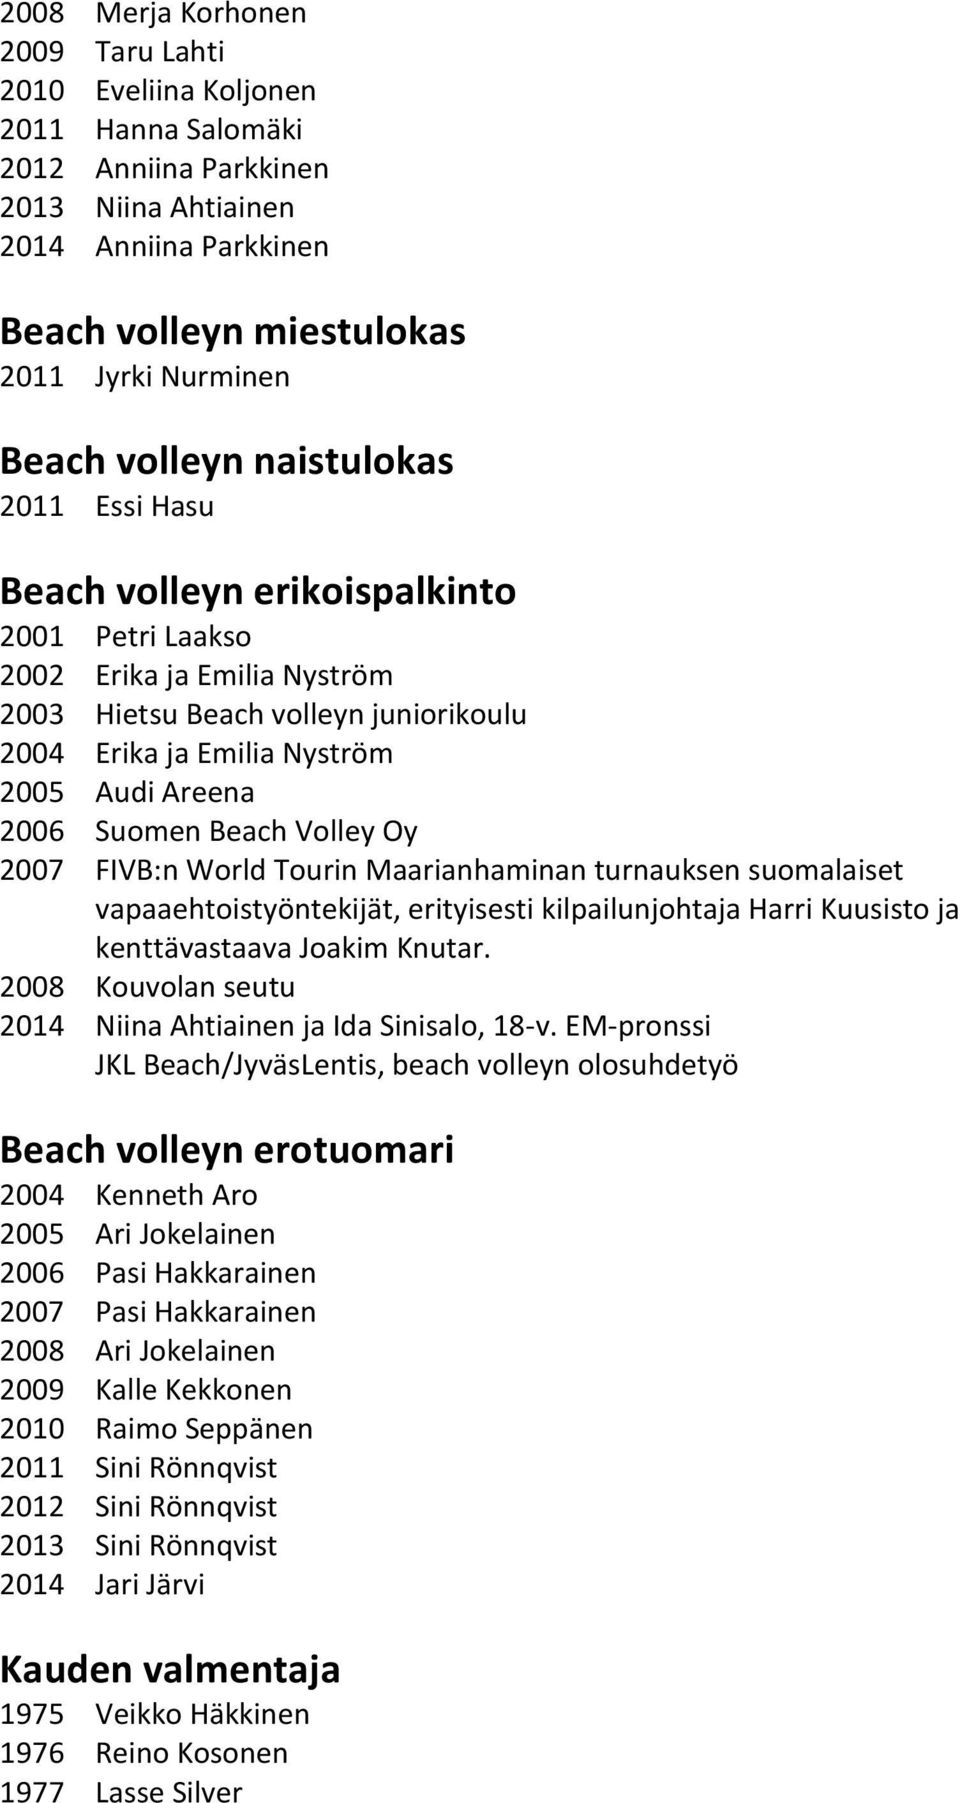 2006 Suomen Beach Volley Oy 2007 FIVB:n World Tourin Maarianhaminan turnauksen suomalaiset vapaaehtoistyöntekijät, erityisesti kilpailunjohtaja Harri Kuusisto ja kenttävastaava Joakim Knutar.